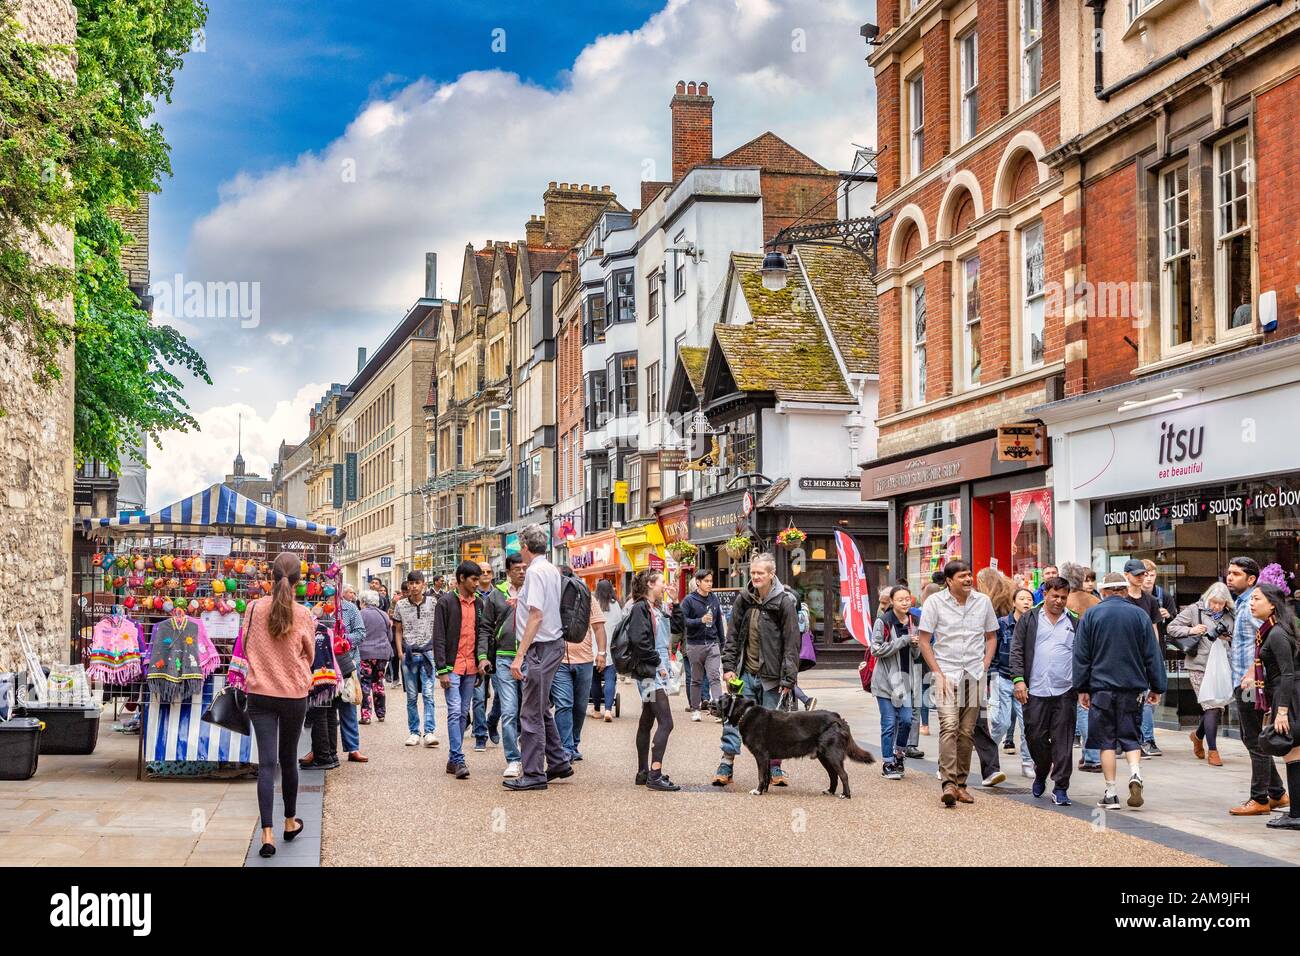 6 juin 2019 : Oxford, Royaume-Uni - Cornmarket Street, visites et commerces de la foule dans l'un des principaux centres commerciaux d'Oxford. Banque D'Images